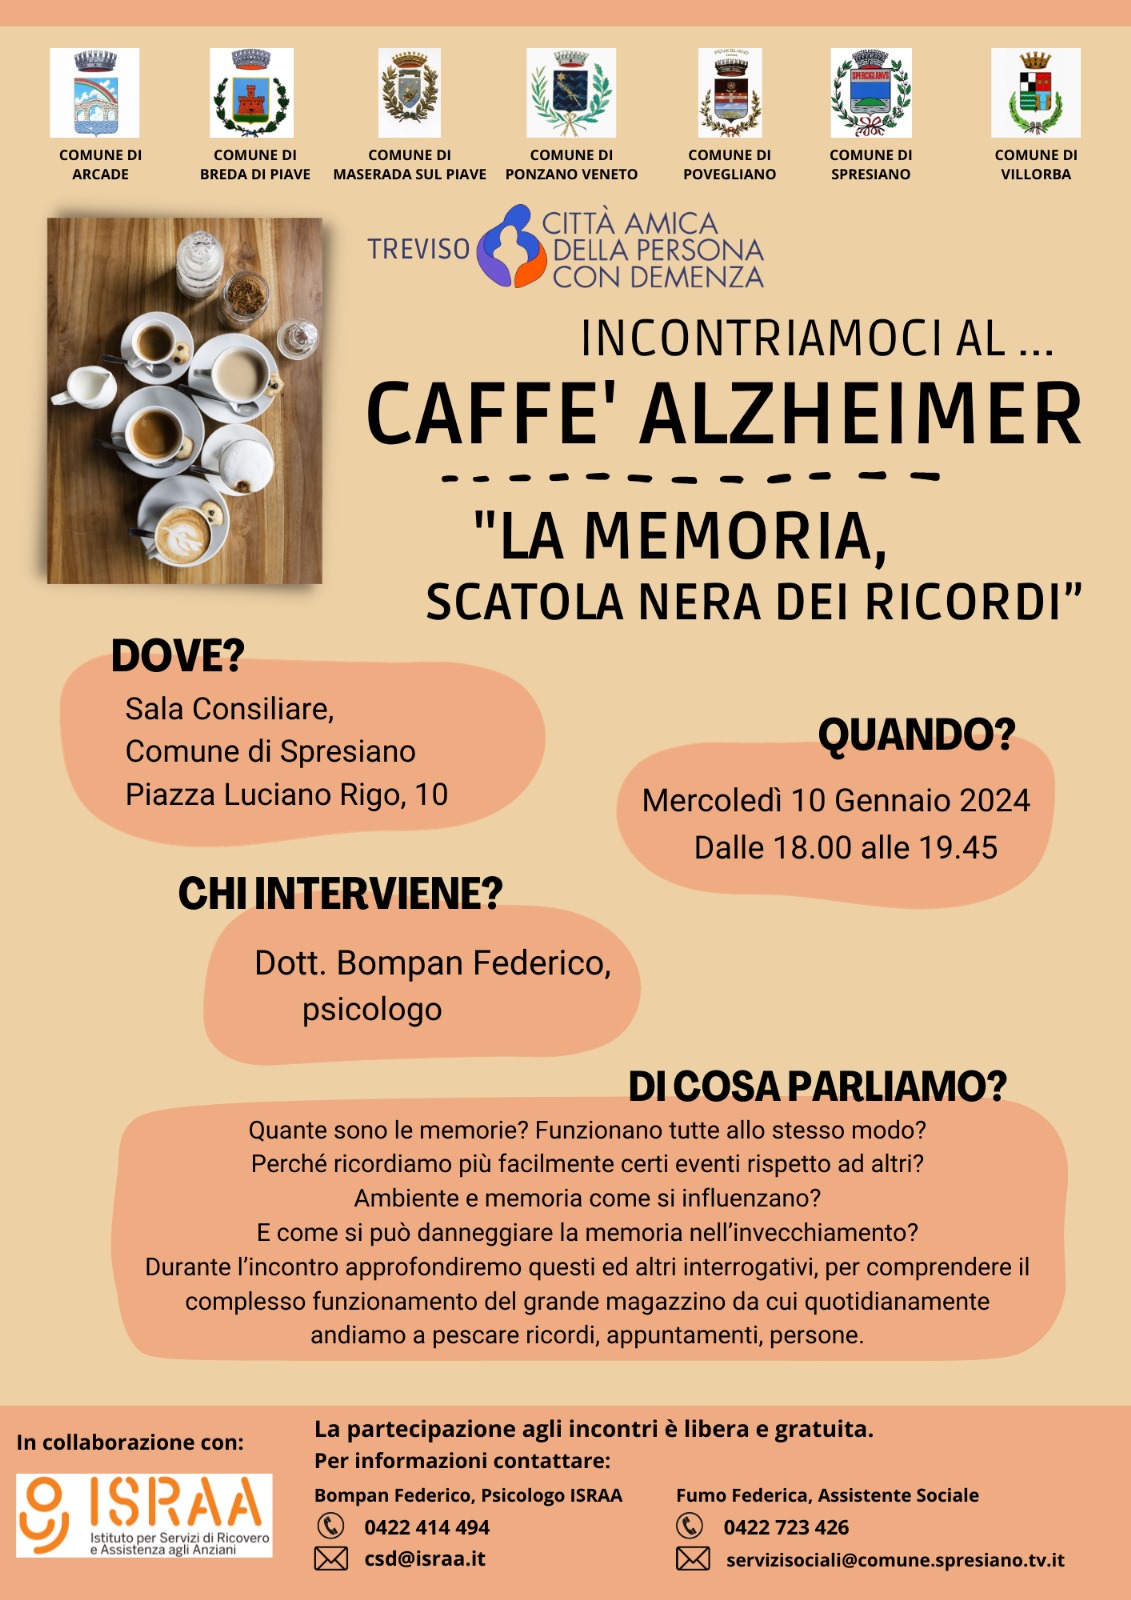 Caffè Alzheimer - La memoria, scatola nera dei ricordi